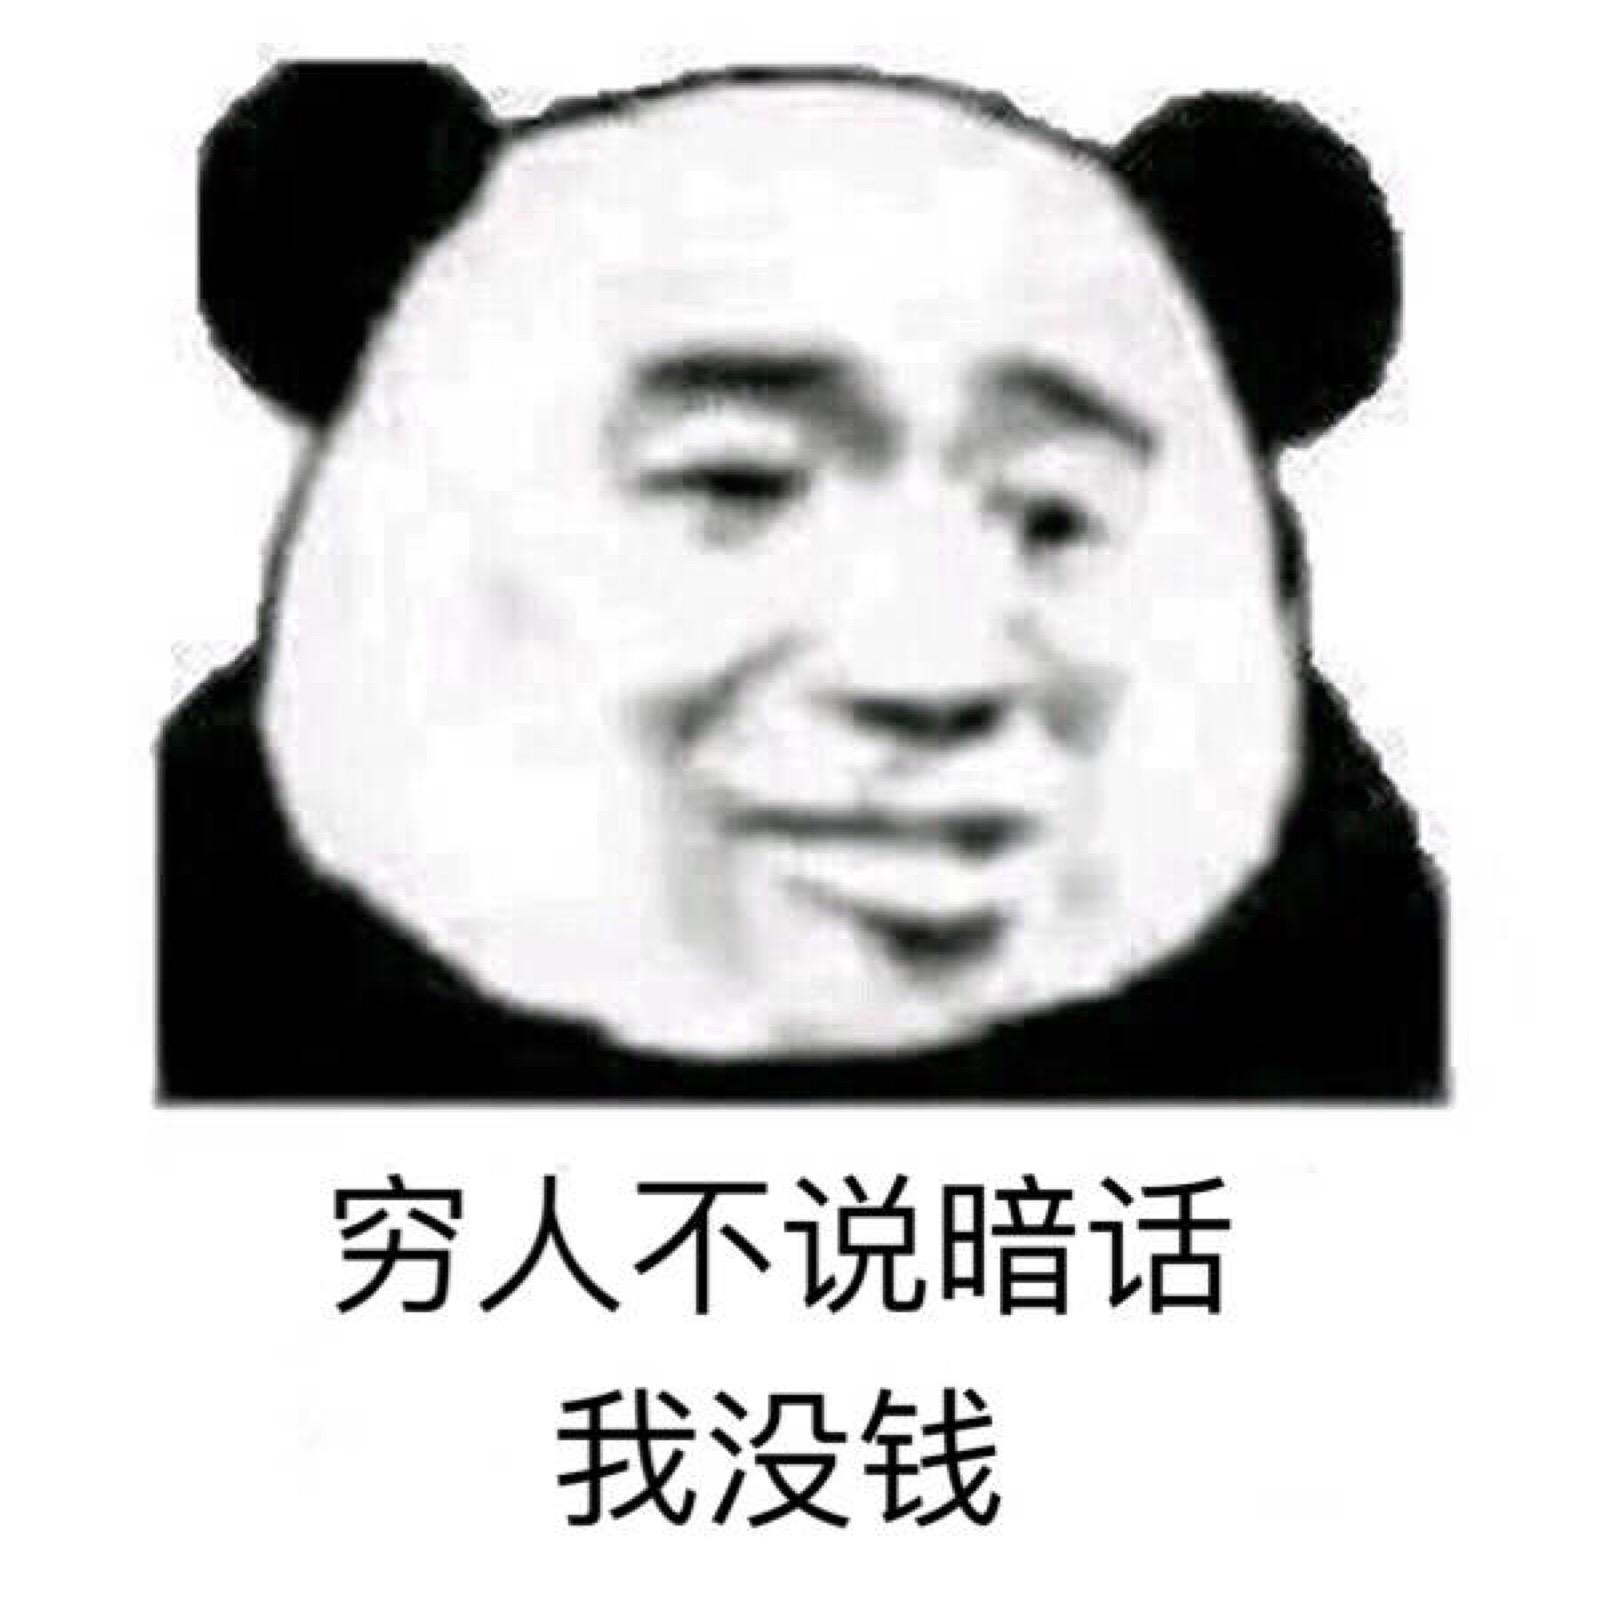 沙雕 熊猫头 表情包